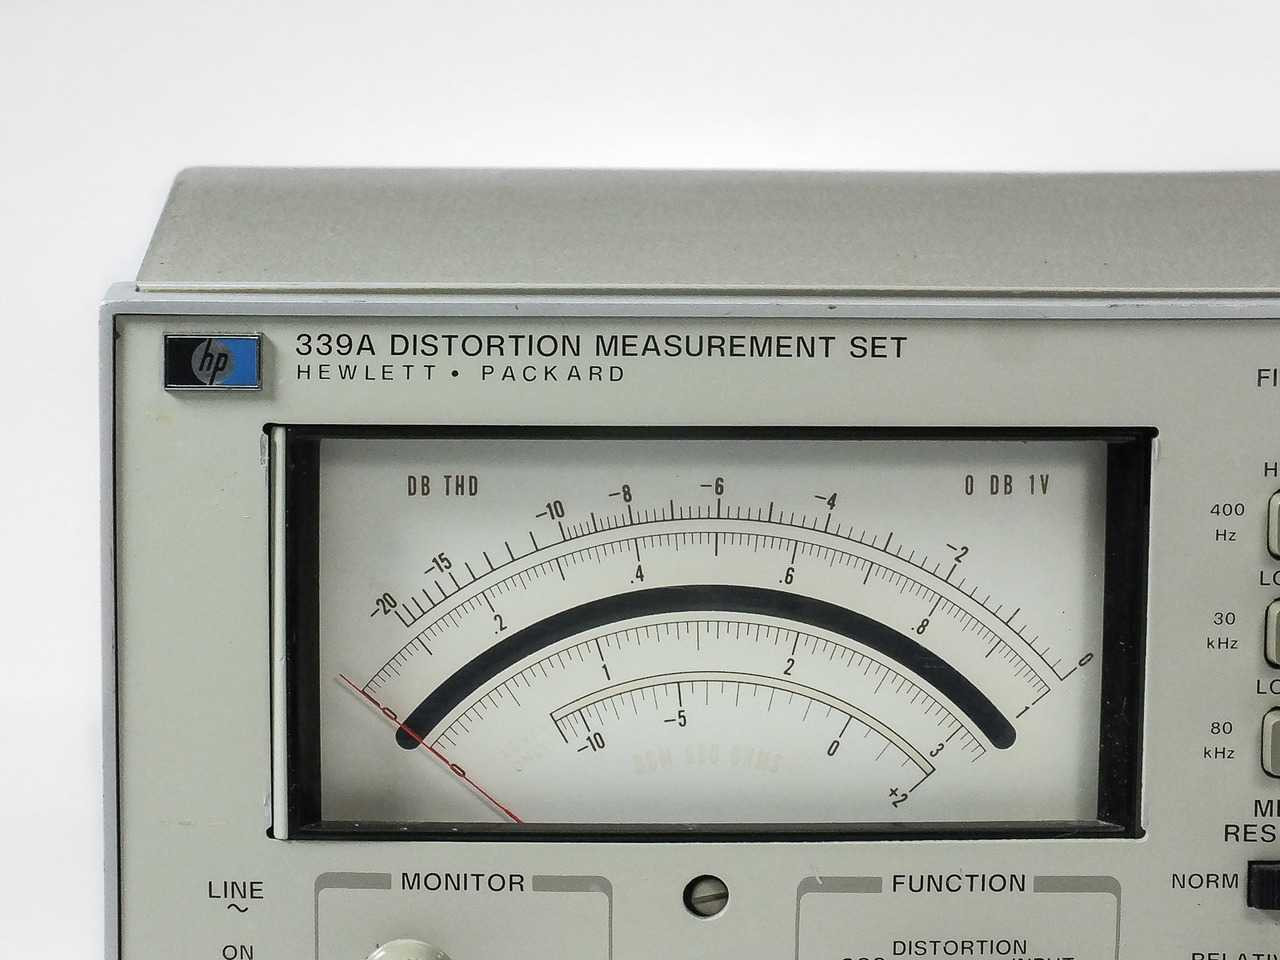 Hewlett Packard 339A Distortion Measurement Set